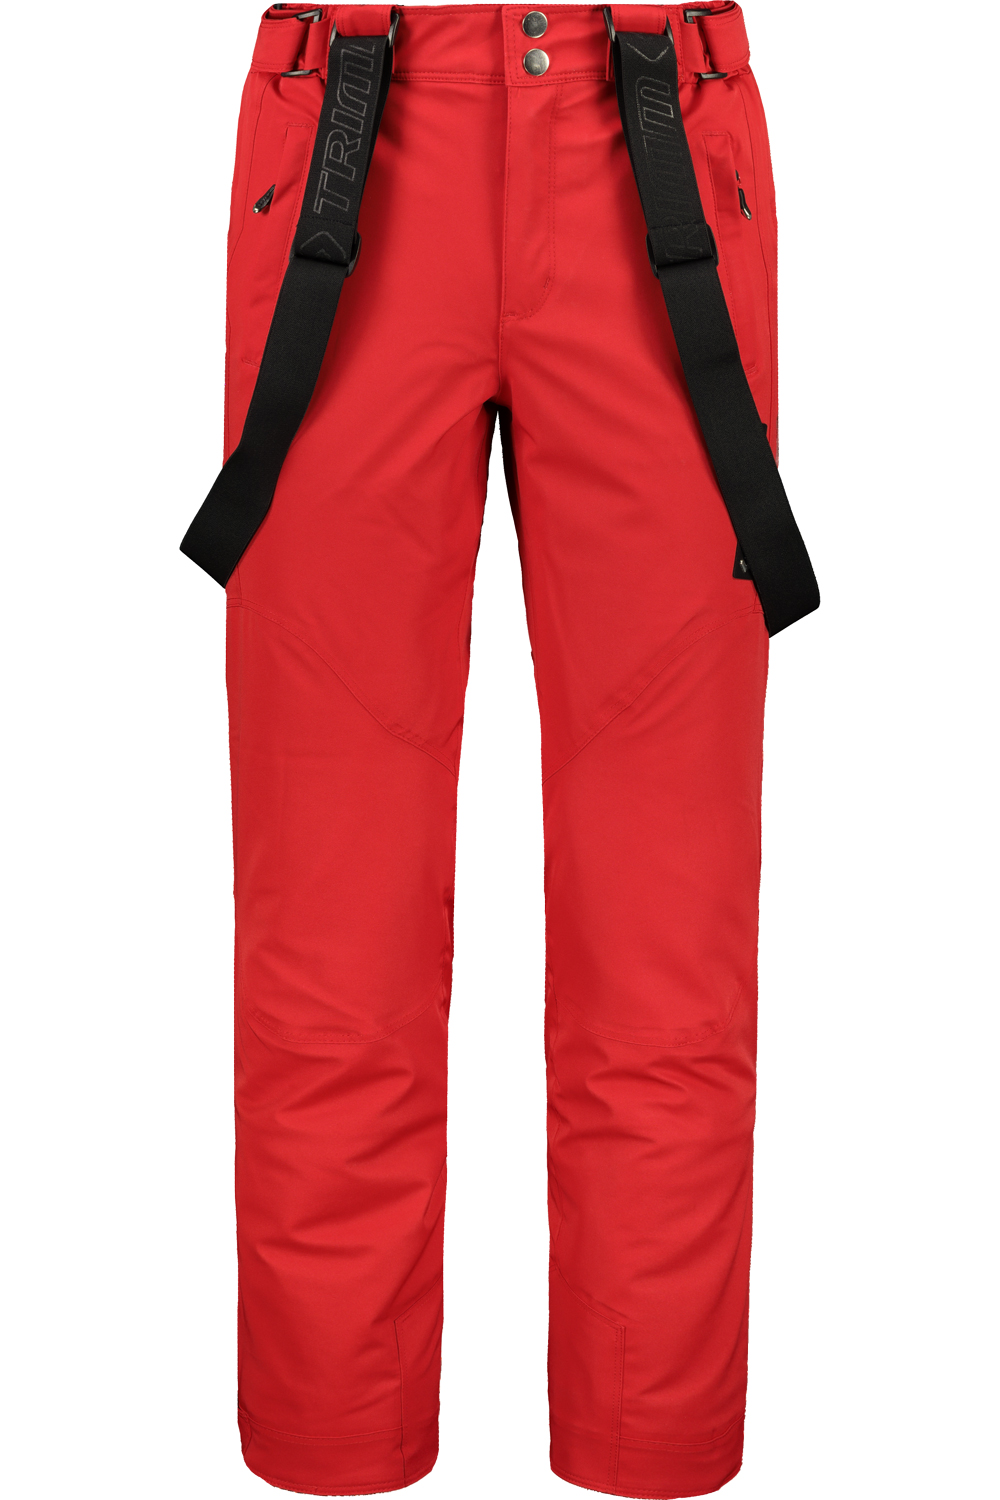 Ανδρικό παντελόνι για σκι TRIMM RIDER